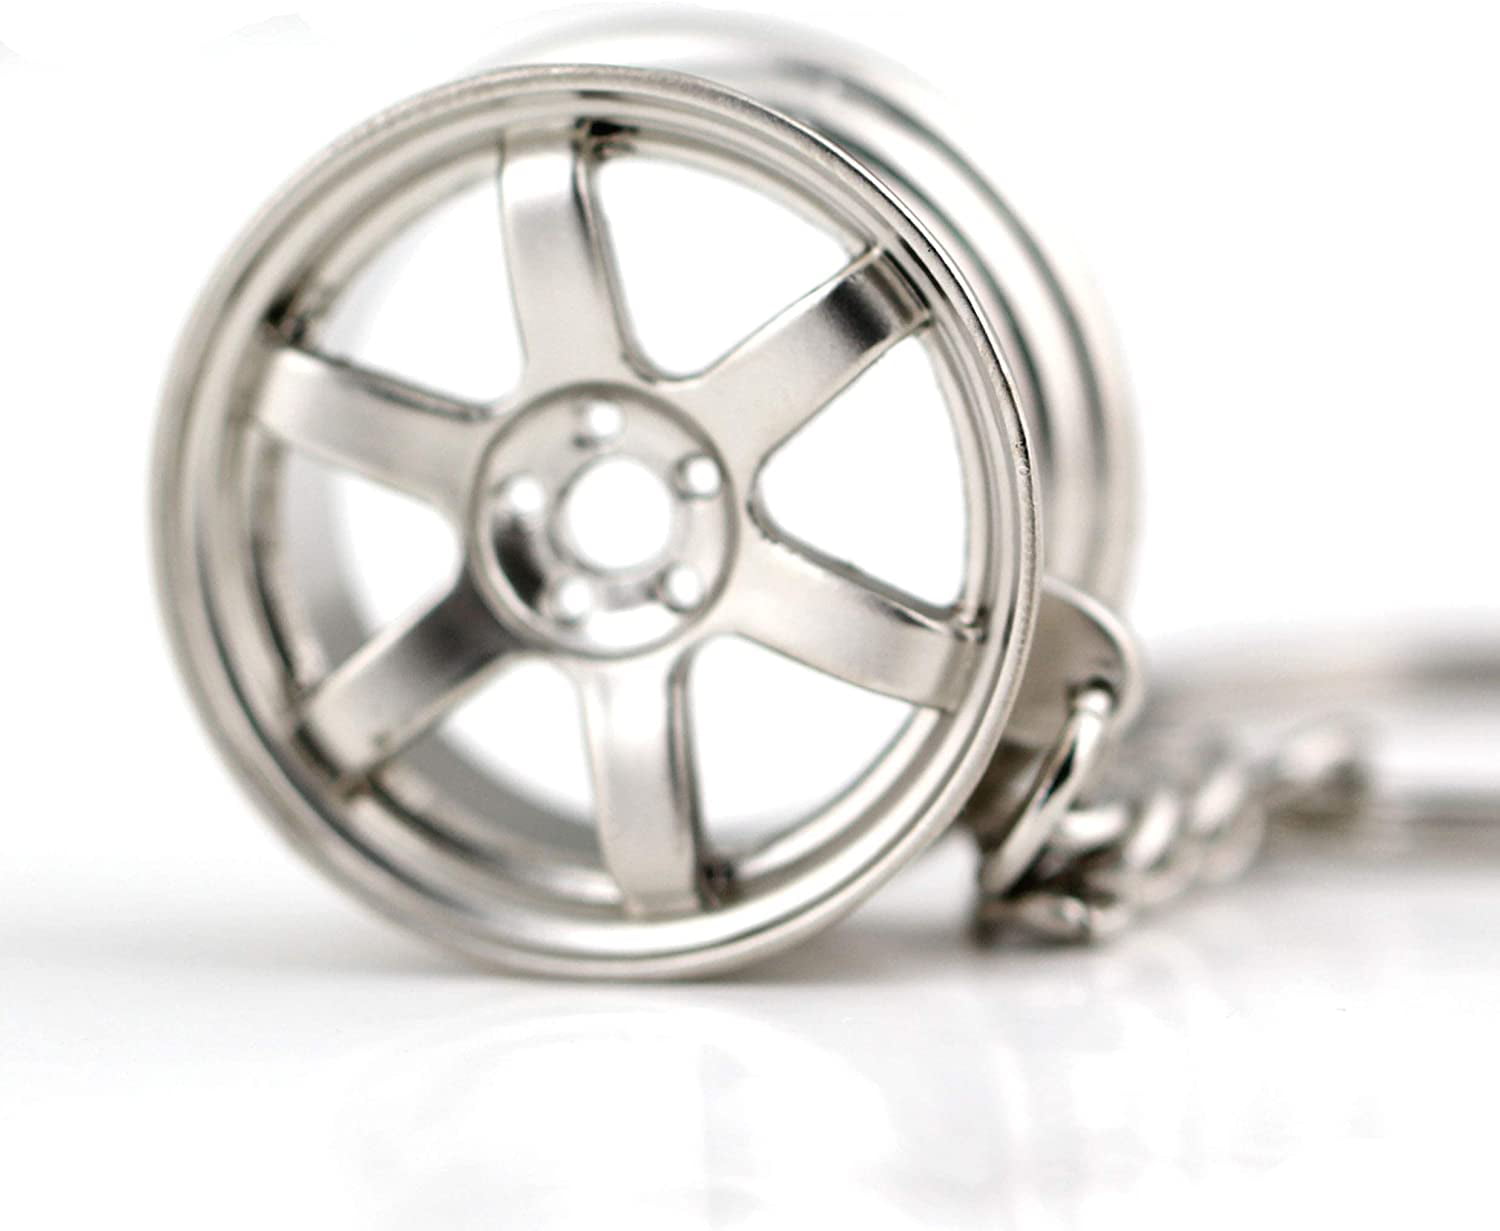 Car wheel keychain key ring Car Tire Wheel Keychain Auto Car Key Chain CJ 